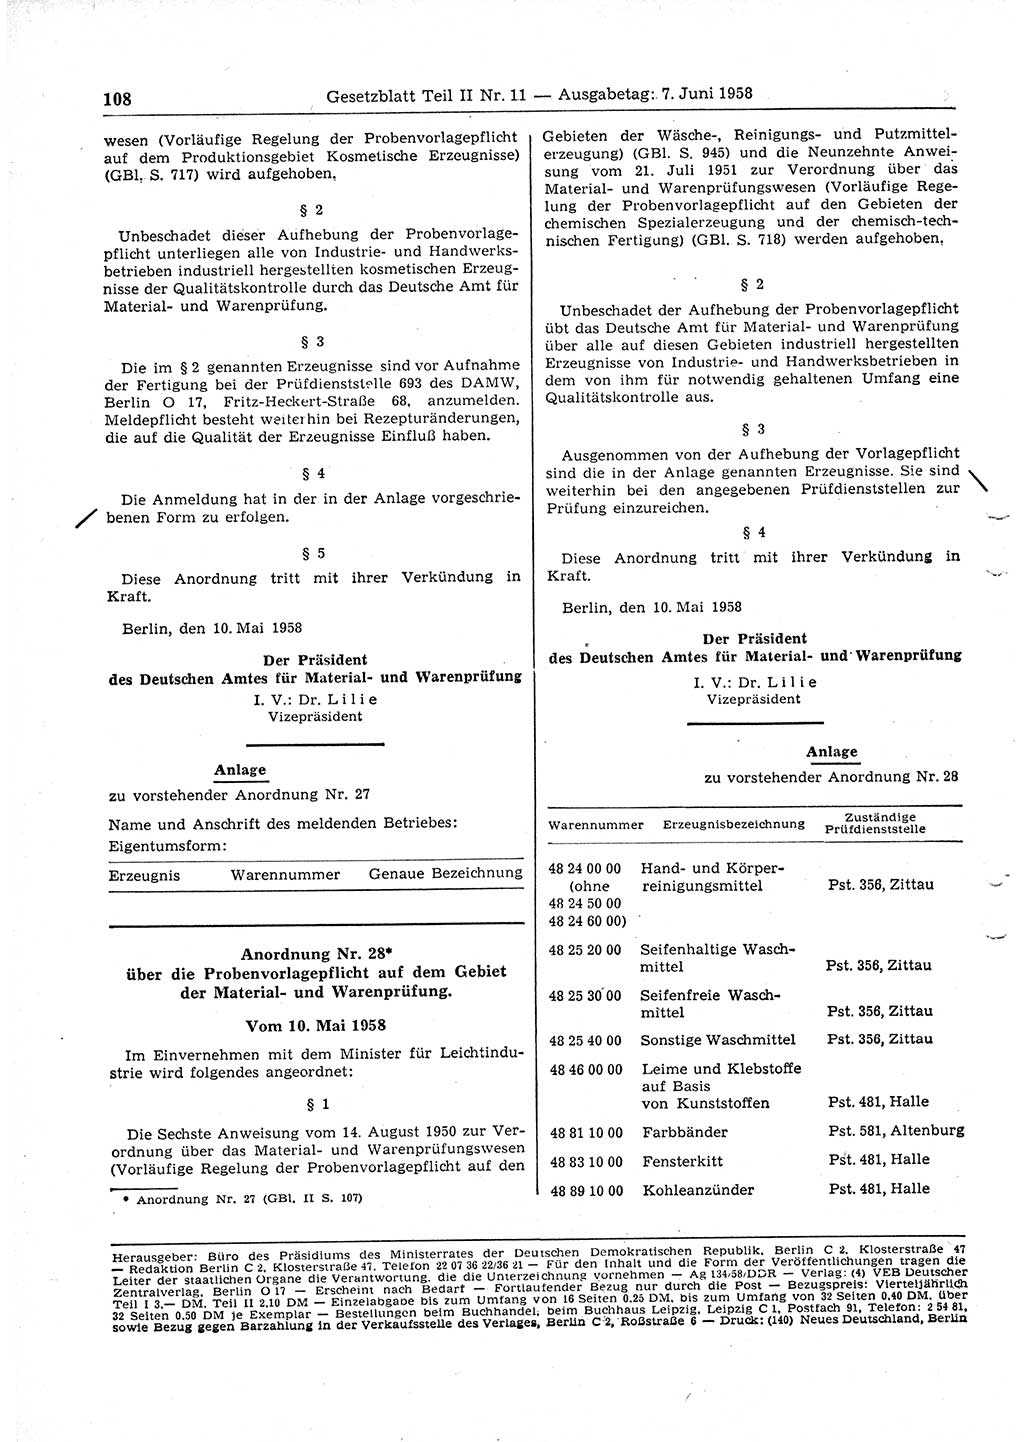 Gesetzblatt (GBl.) der Deutschen Demokratischen Republik (DDR) Teil ⅠⅠ 1958, Seite 108 (GBl. DDR ⅠⅠ 1958, S. 108)